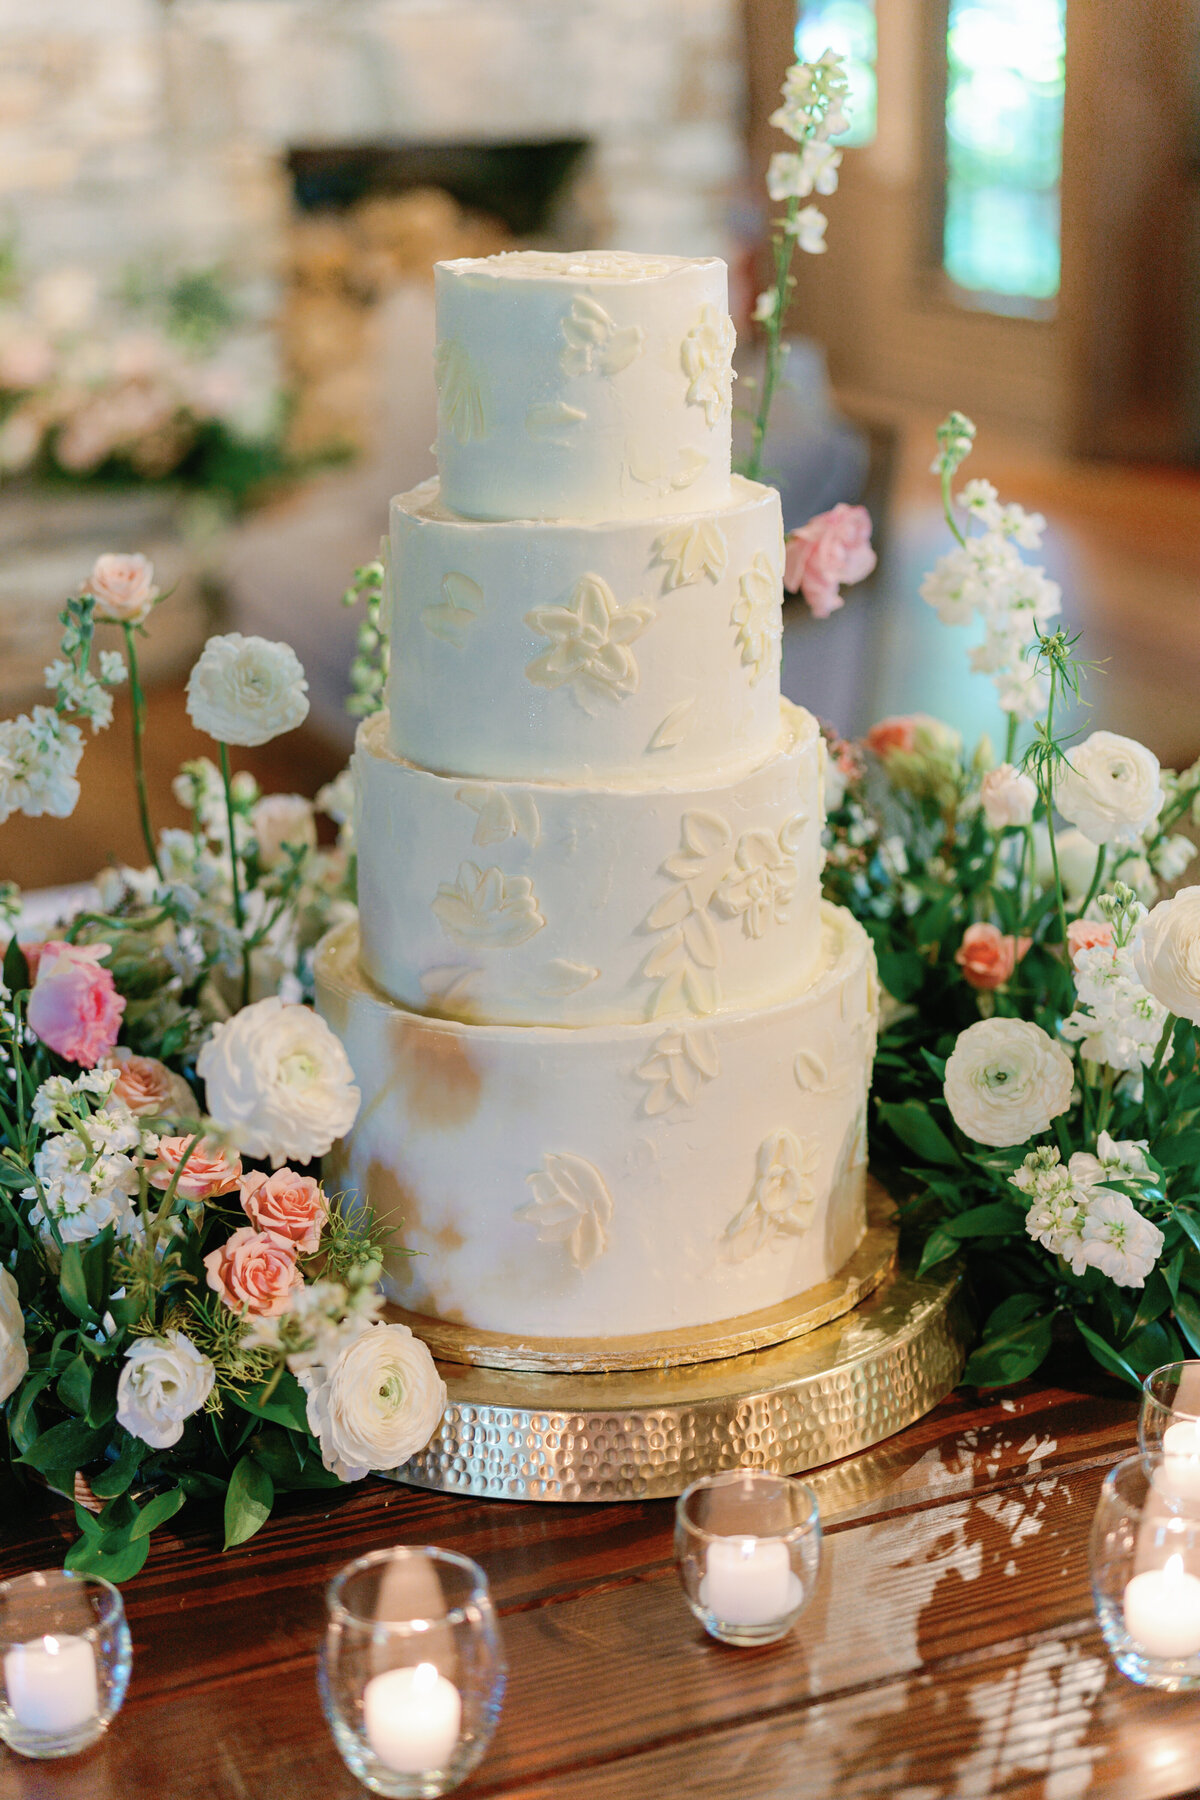 Old Edwards wedding cake. 4 tiered wedding cake. Destination wedding photographer.